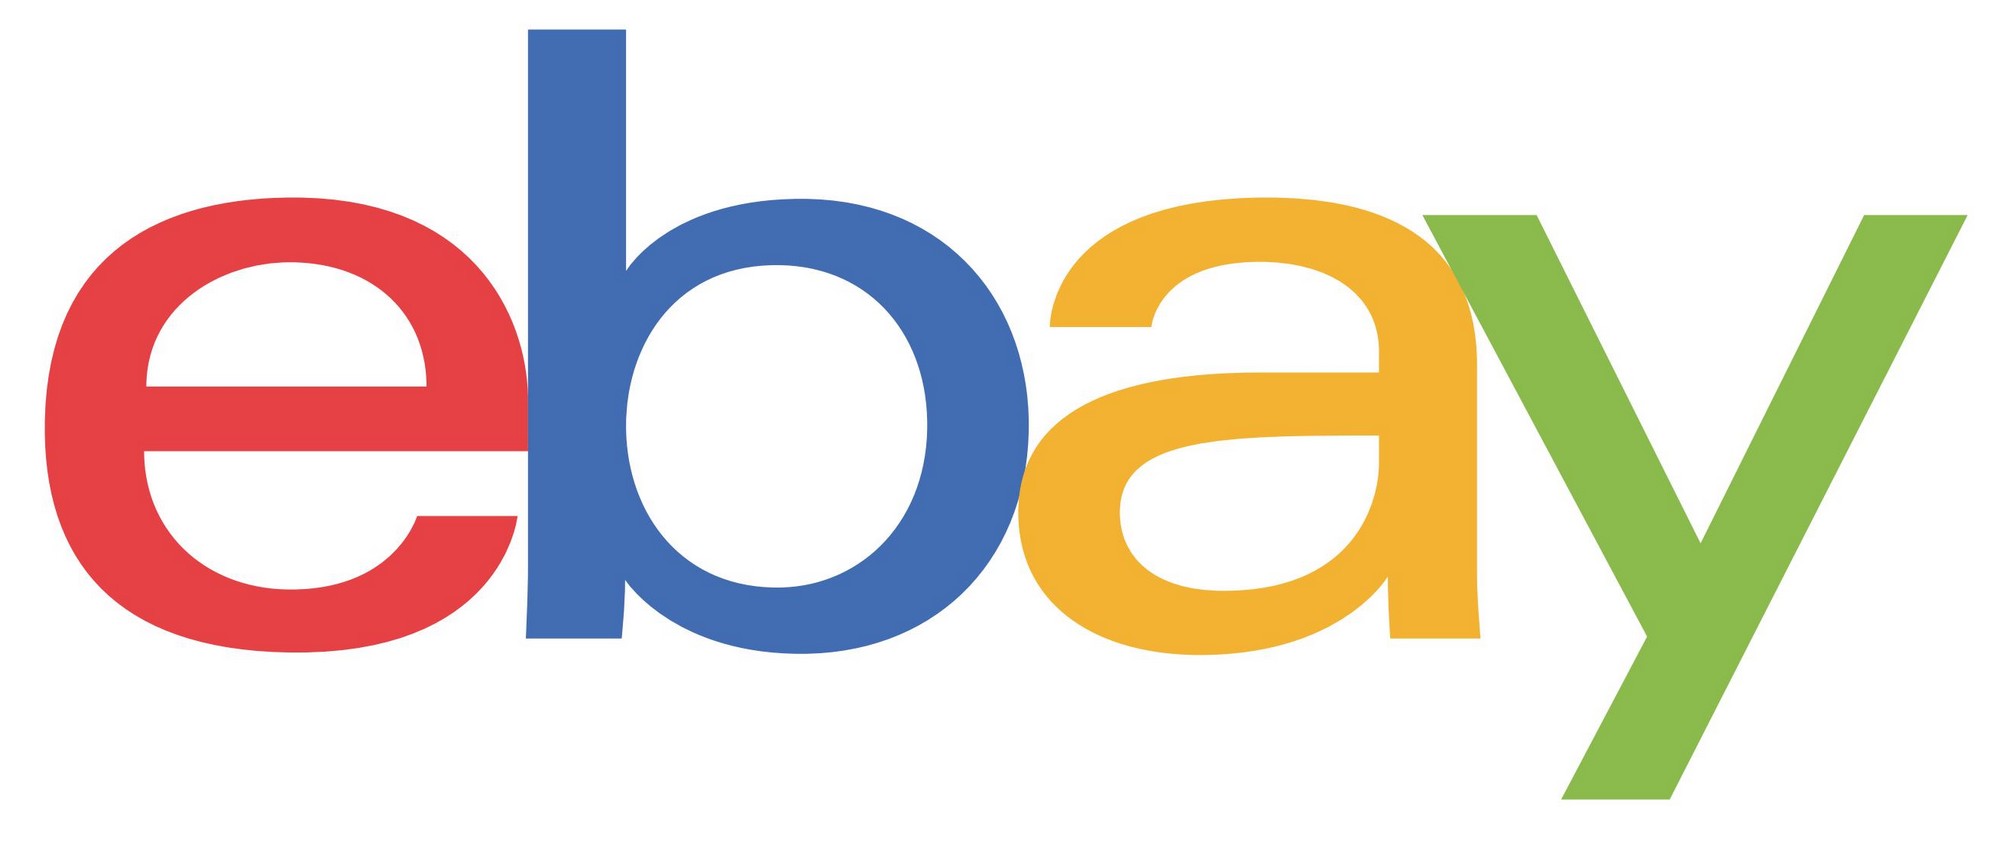 ebay logo vector 01